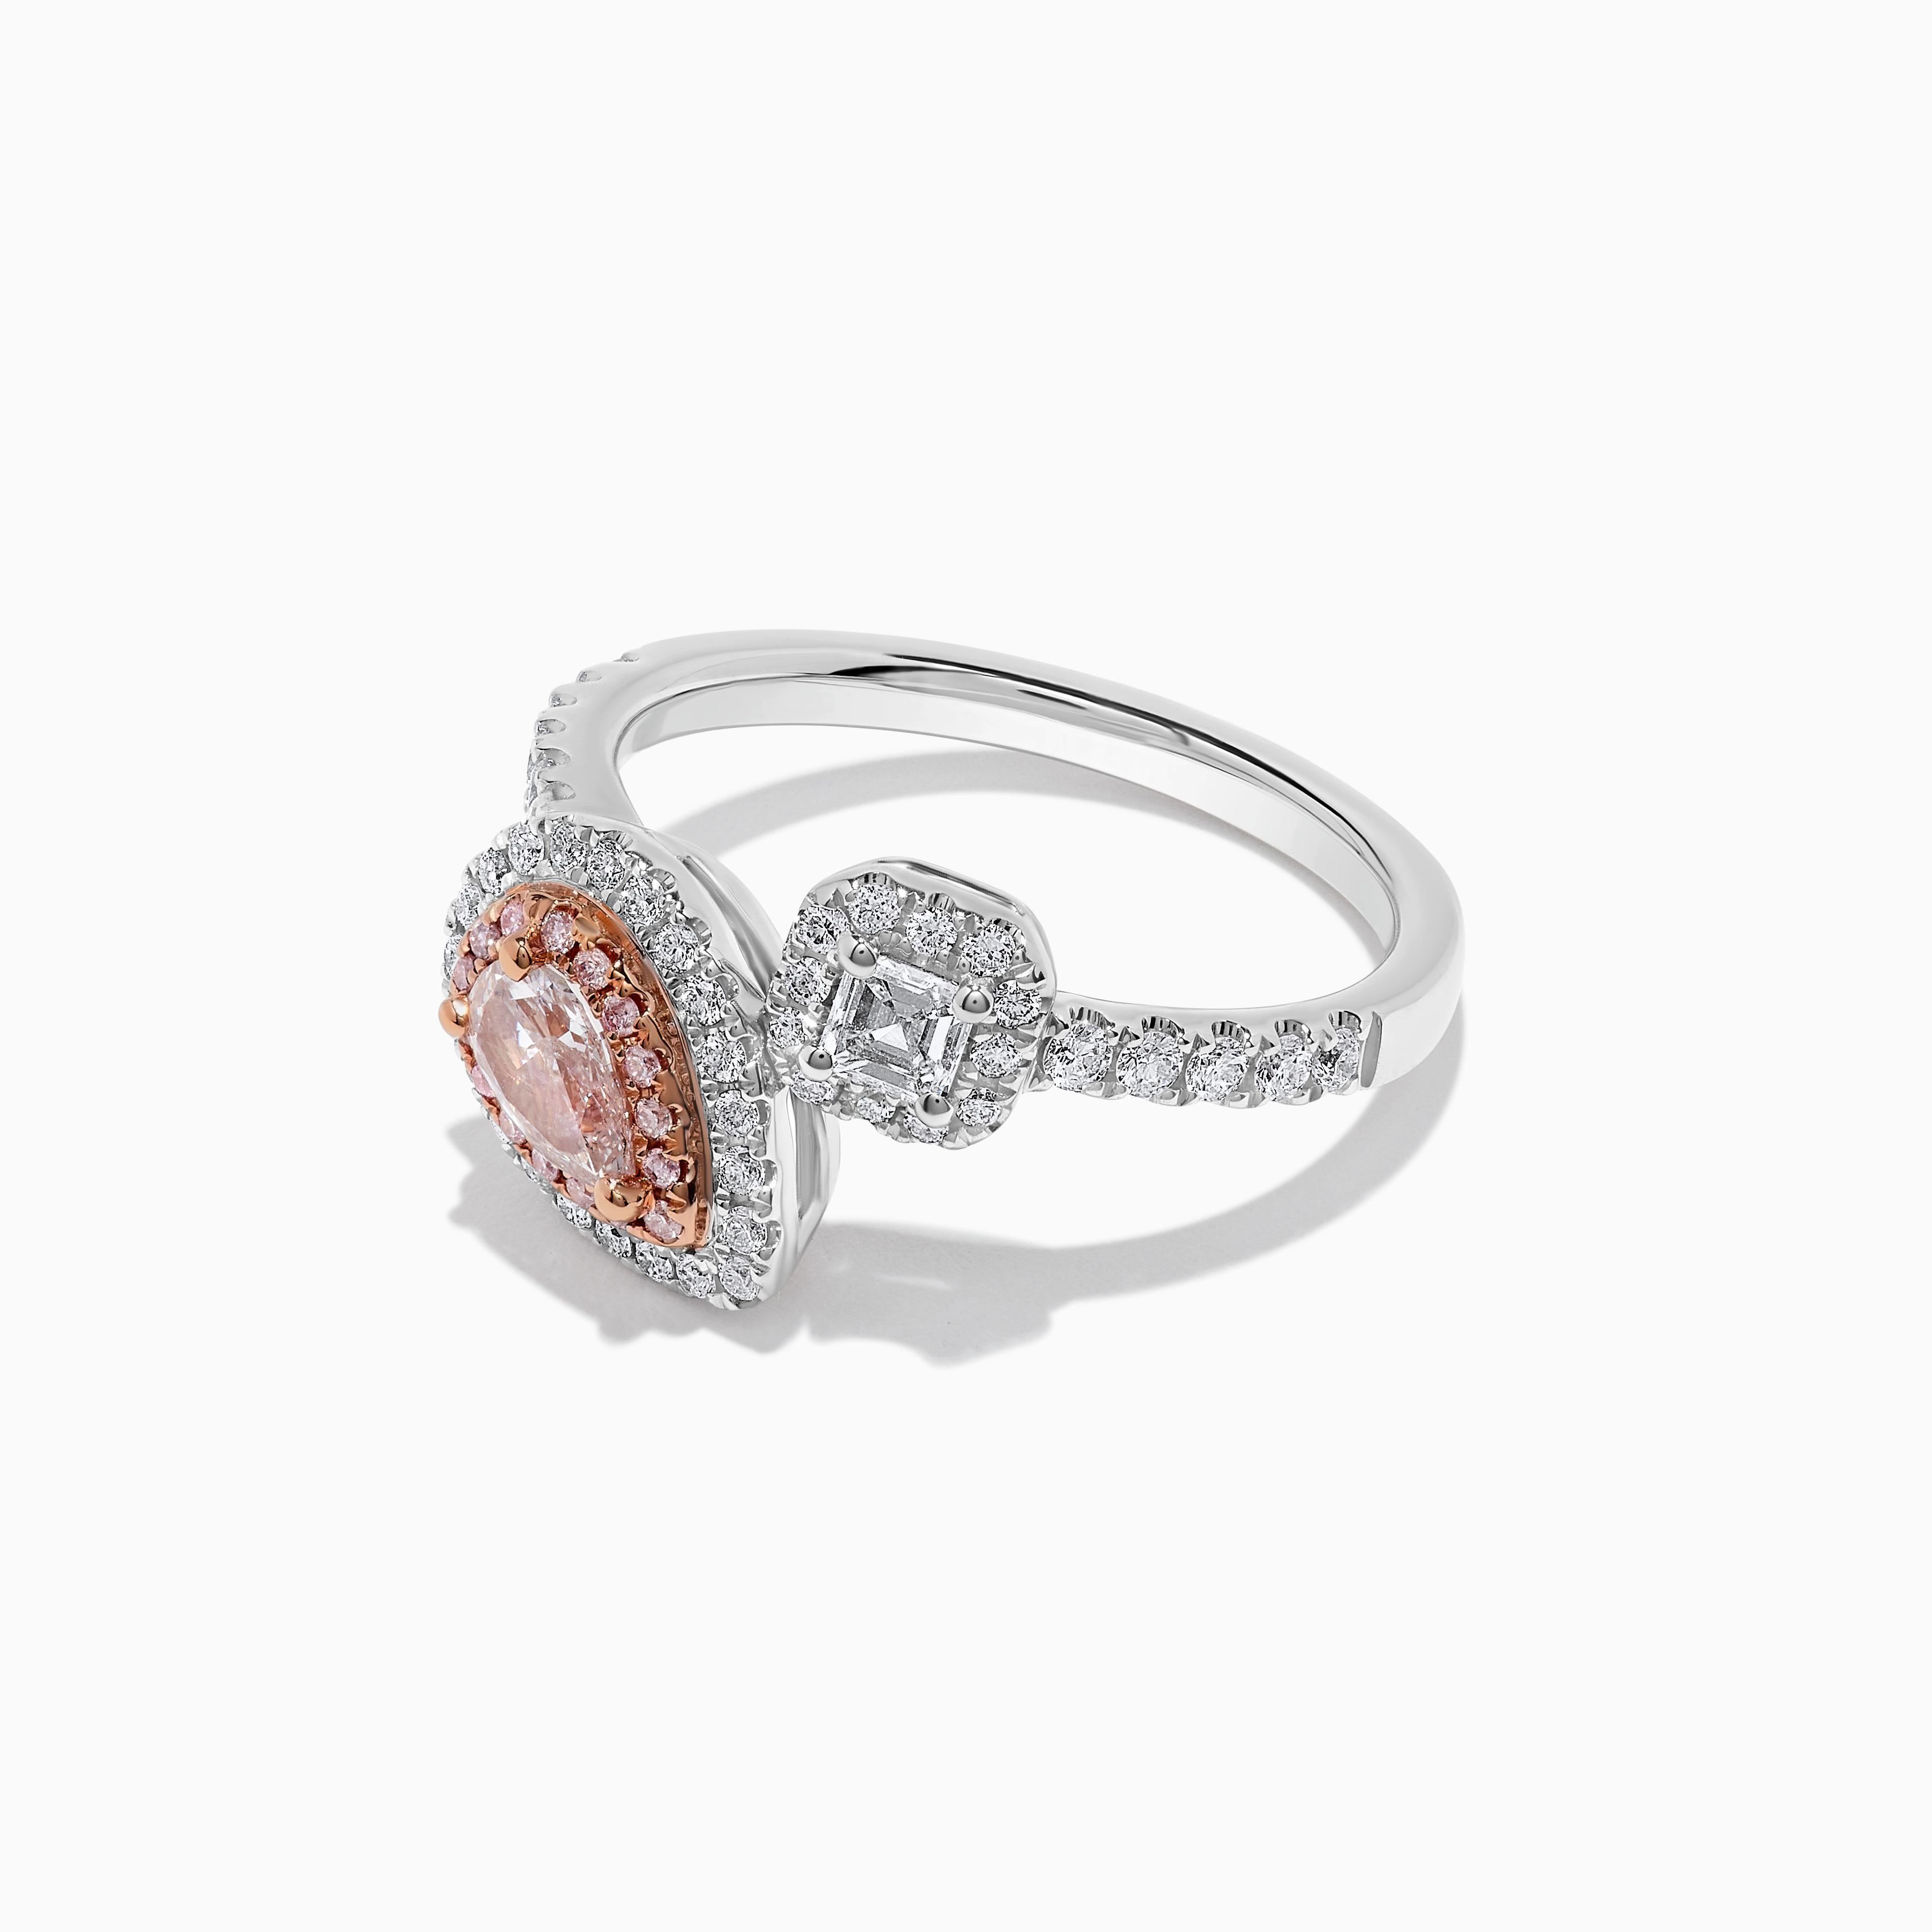 Der klassische GIA-zertifizierte Diamantring von RareGemWorld. In einer wunderschönen Fassung aus 18 Karat Rosé- und Weißgold mit einem natürlichen rosa Diamanten im Birnenschliff. Der rosafarbene Diamant ist umgeben von einem natürlichen weißen